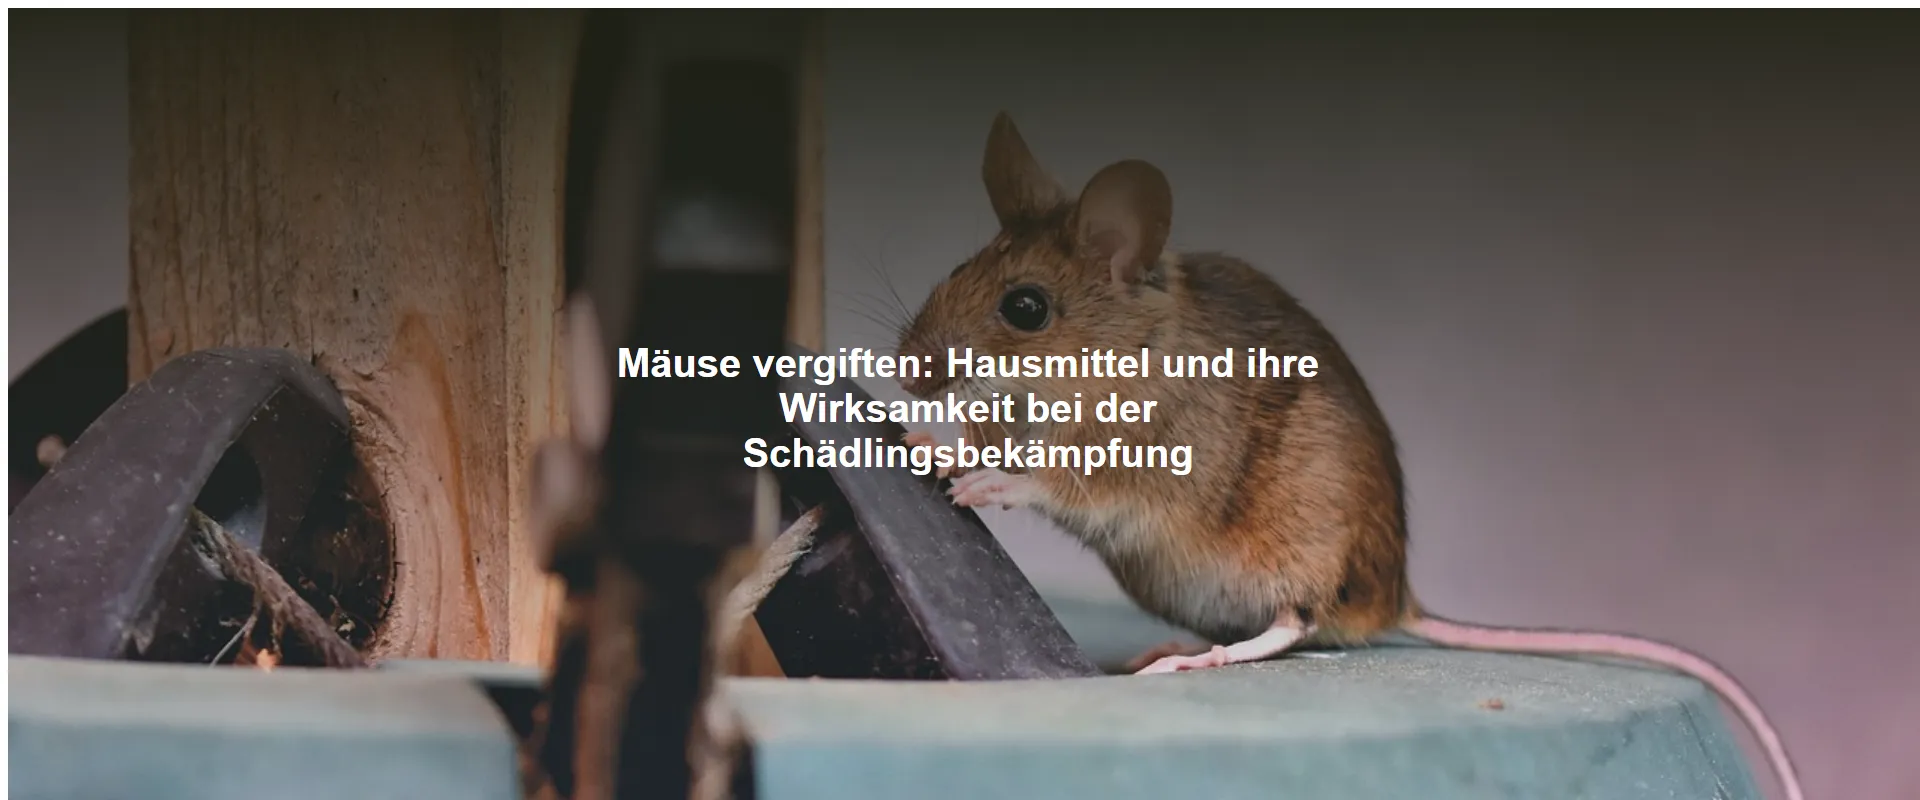 Mäuse vergiften – Hausmittel und ihre Wirksamkeit bei der Schädlingsbekämpfung